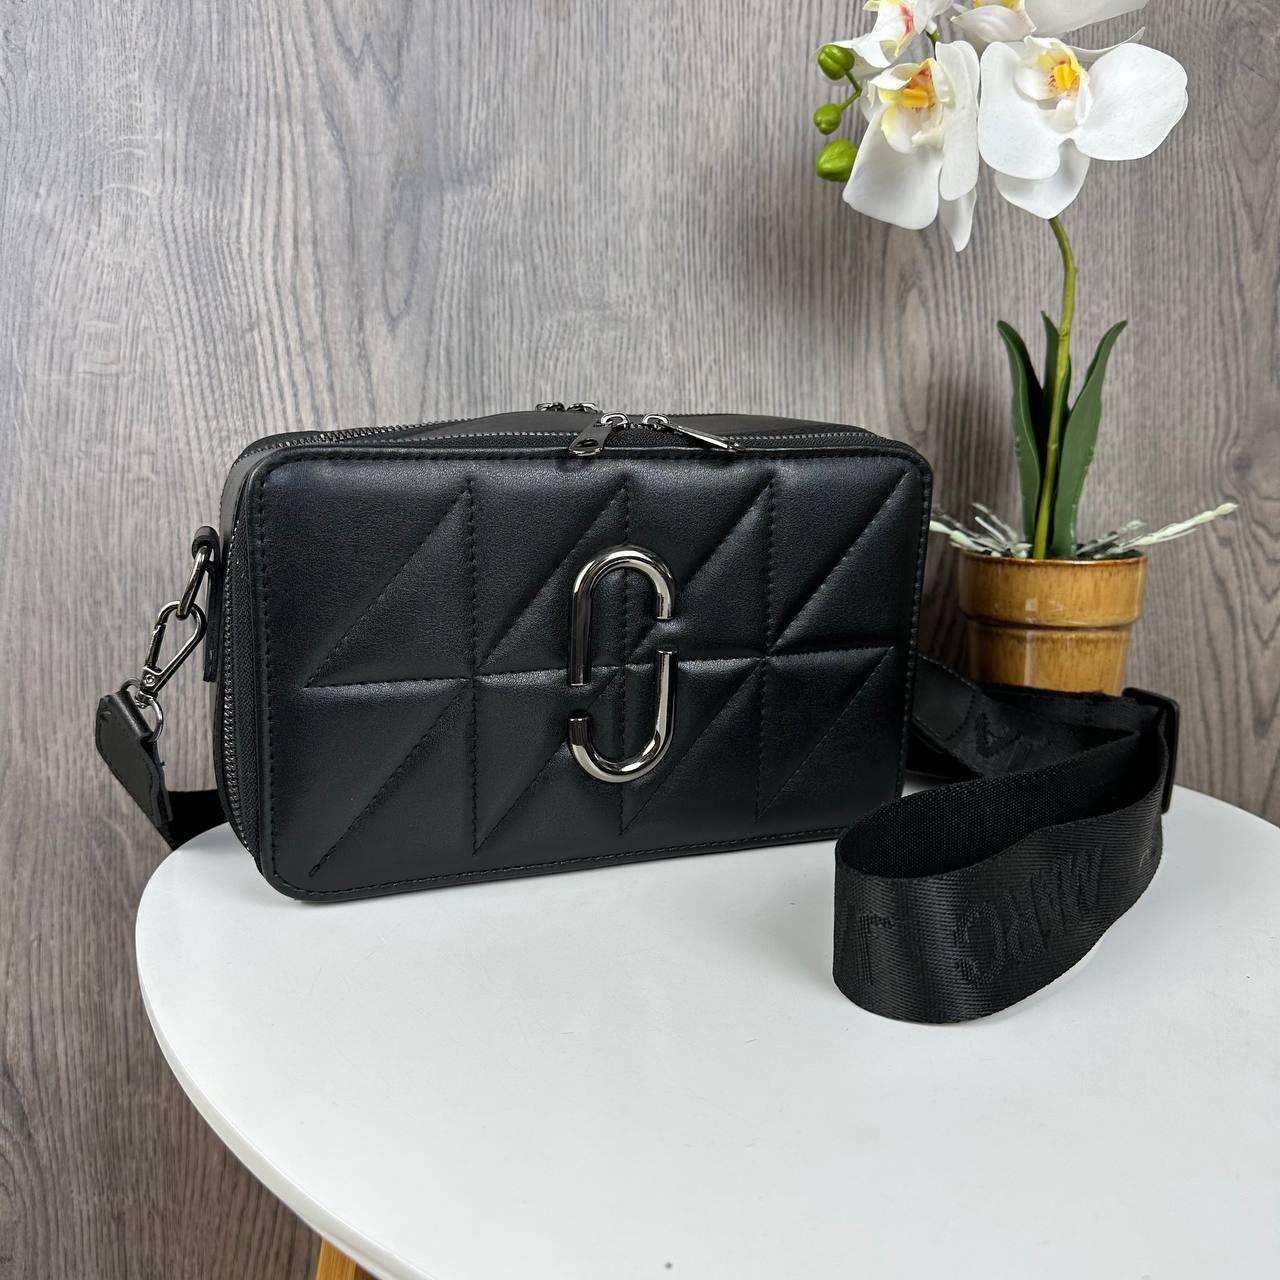 Модна жіноча міні сумочка клатч в стилі Mars Jacobs люкс якість, каркасна сумка Марк Джейкобс Чорна з нікелем